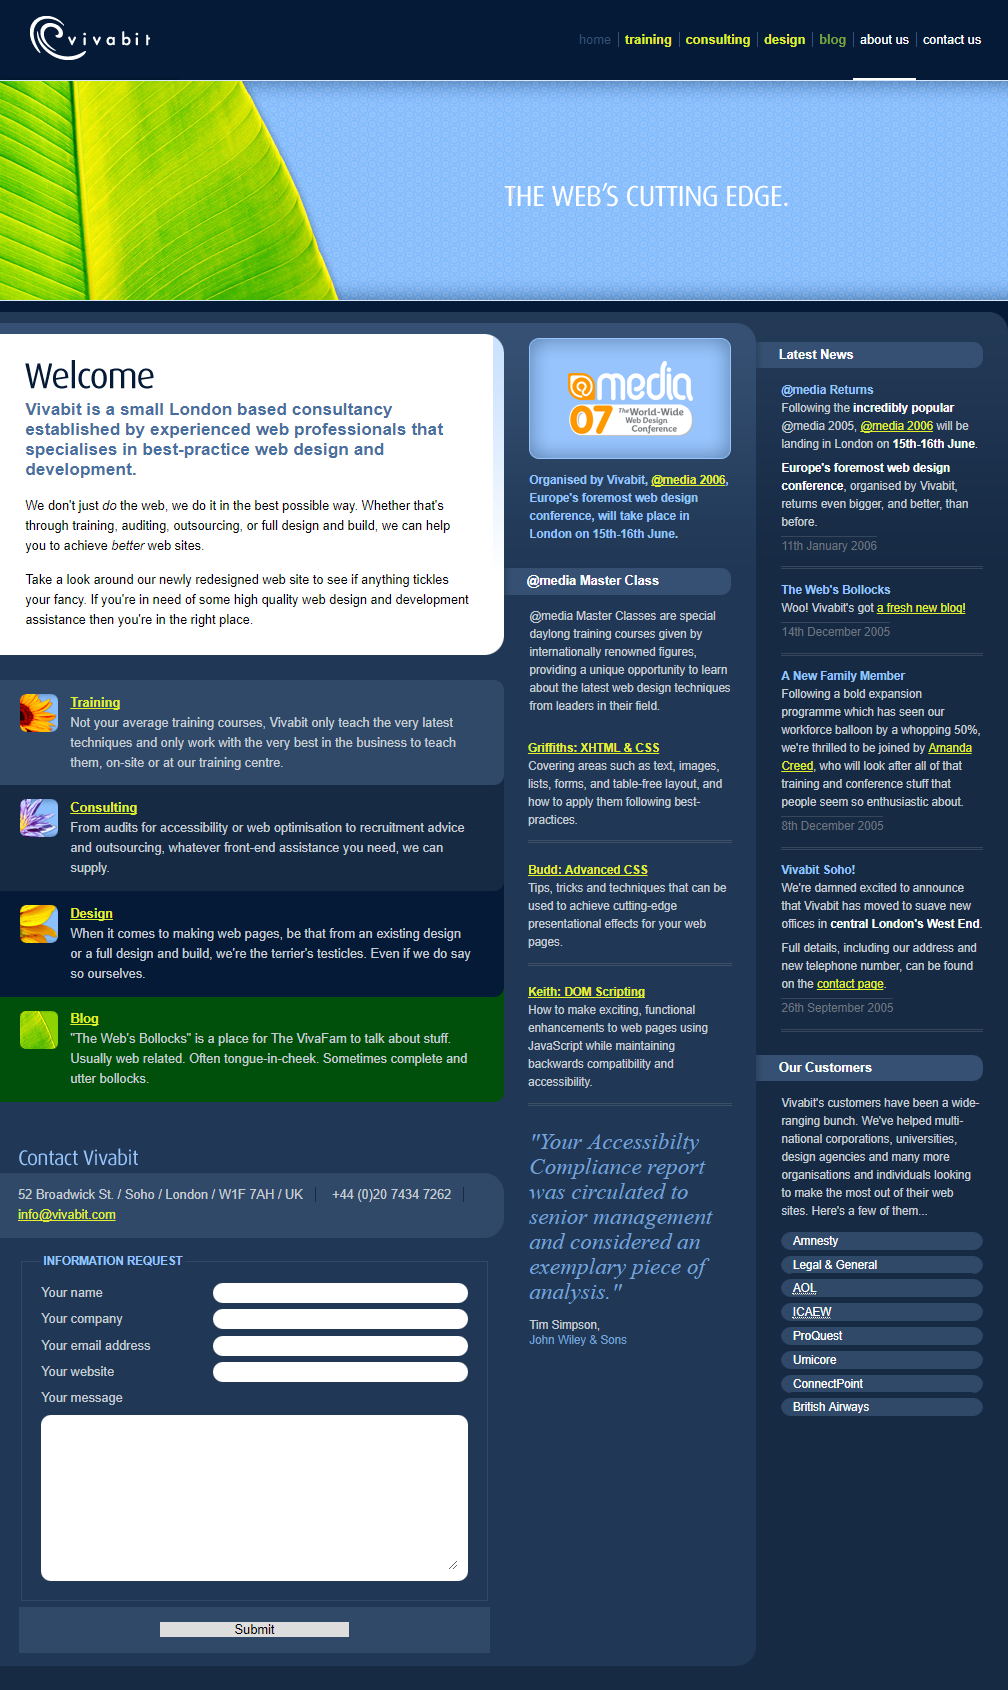 Vivabit website in 2006